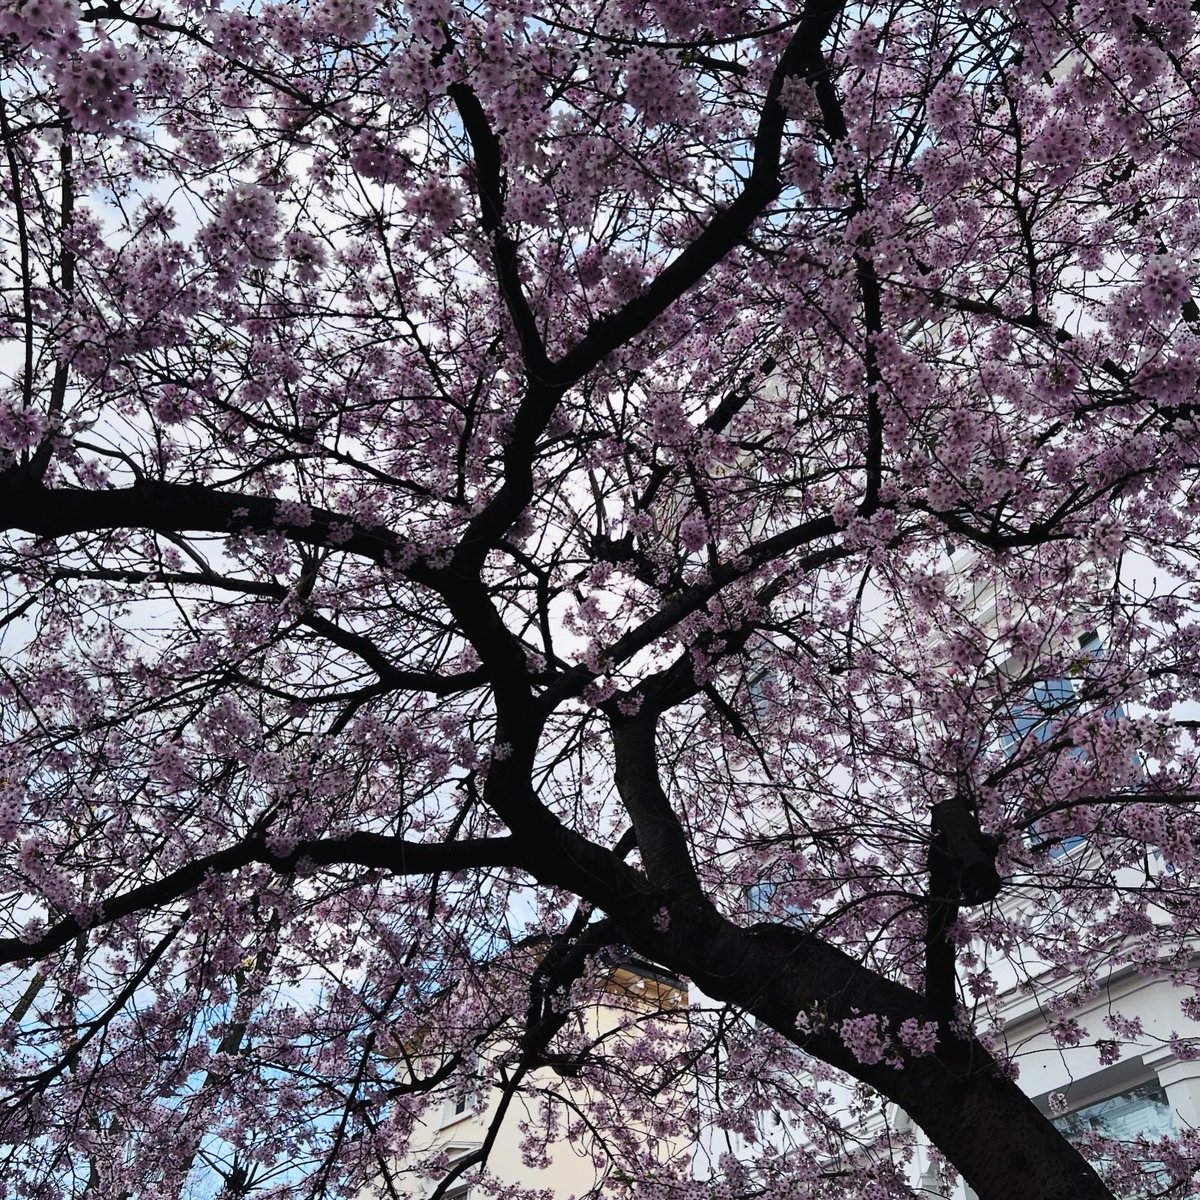 Signs of Spring! 🐣 #cherryblossom #primrosehill #london